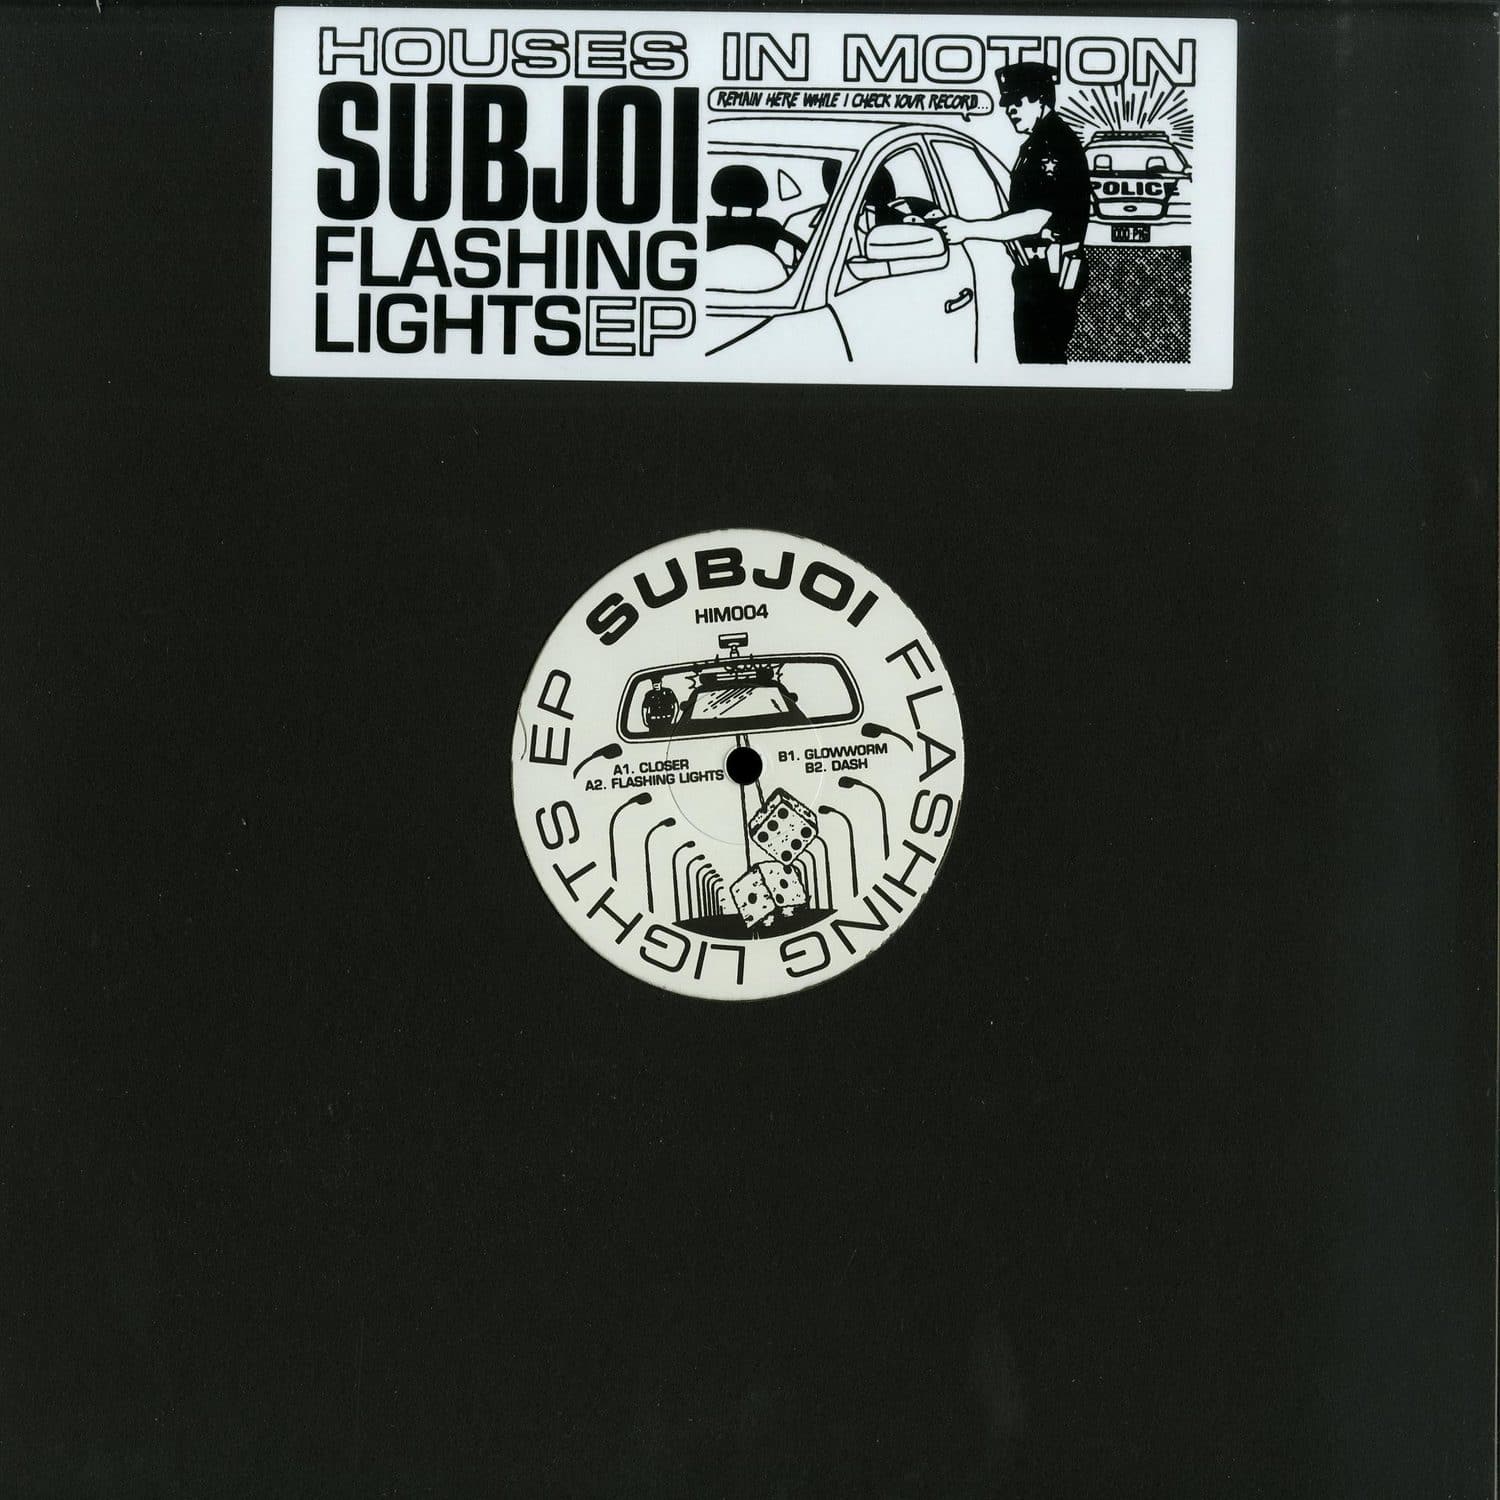 Subjoi - FLASHING LIGHTS EP